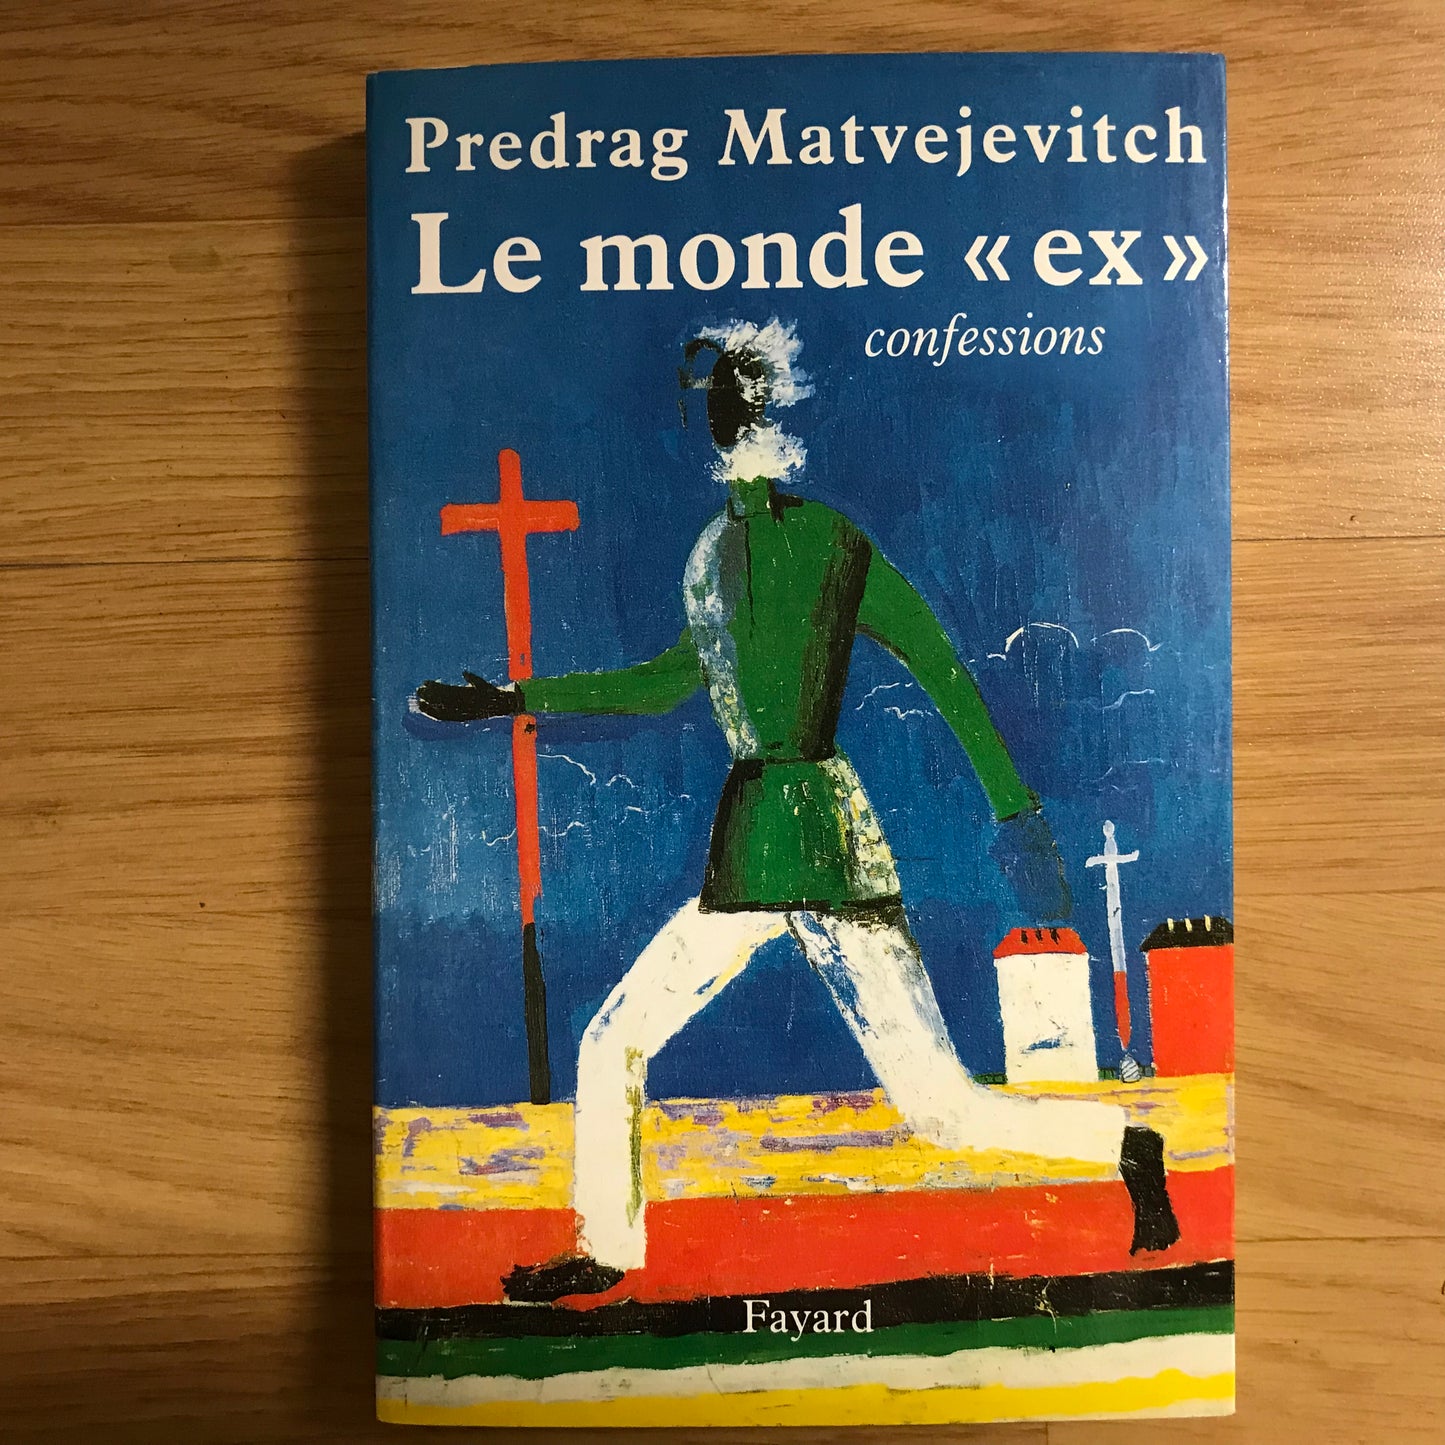 Predrag Matvejevitch - Le monde des « ex », Confessions